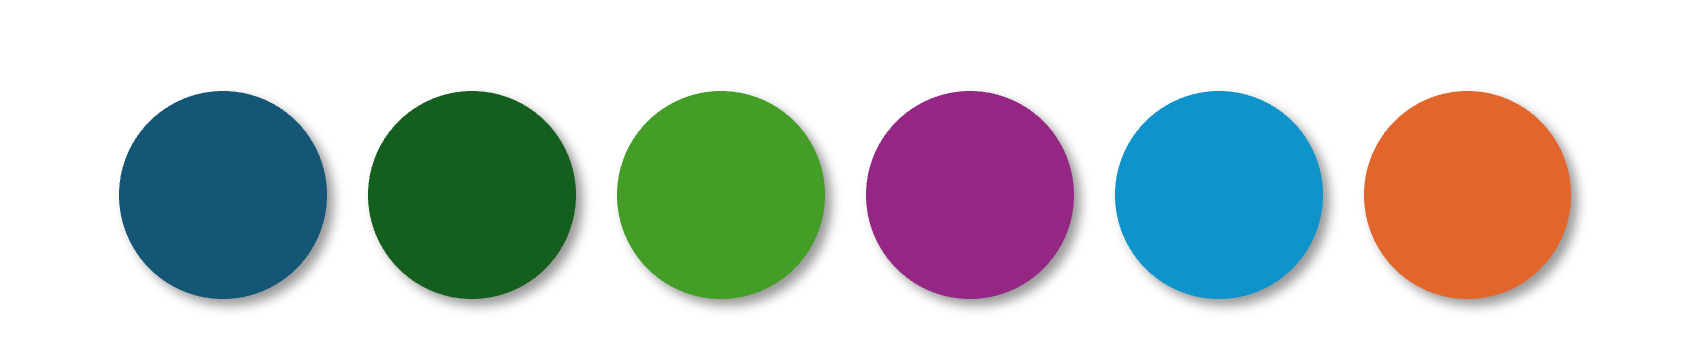 Punkte mit den sechs Akzentfarben Dunkelblau, Dunkelgrün, Grün, Violett, Blau, Orange
